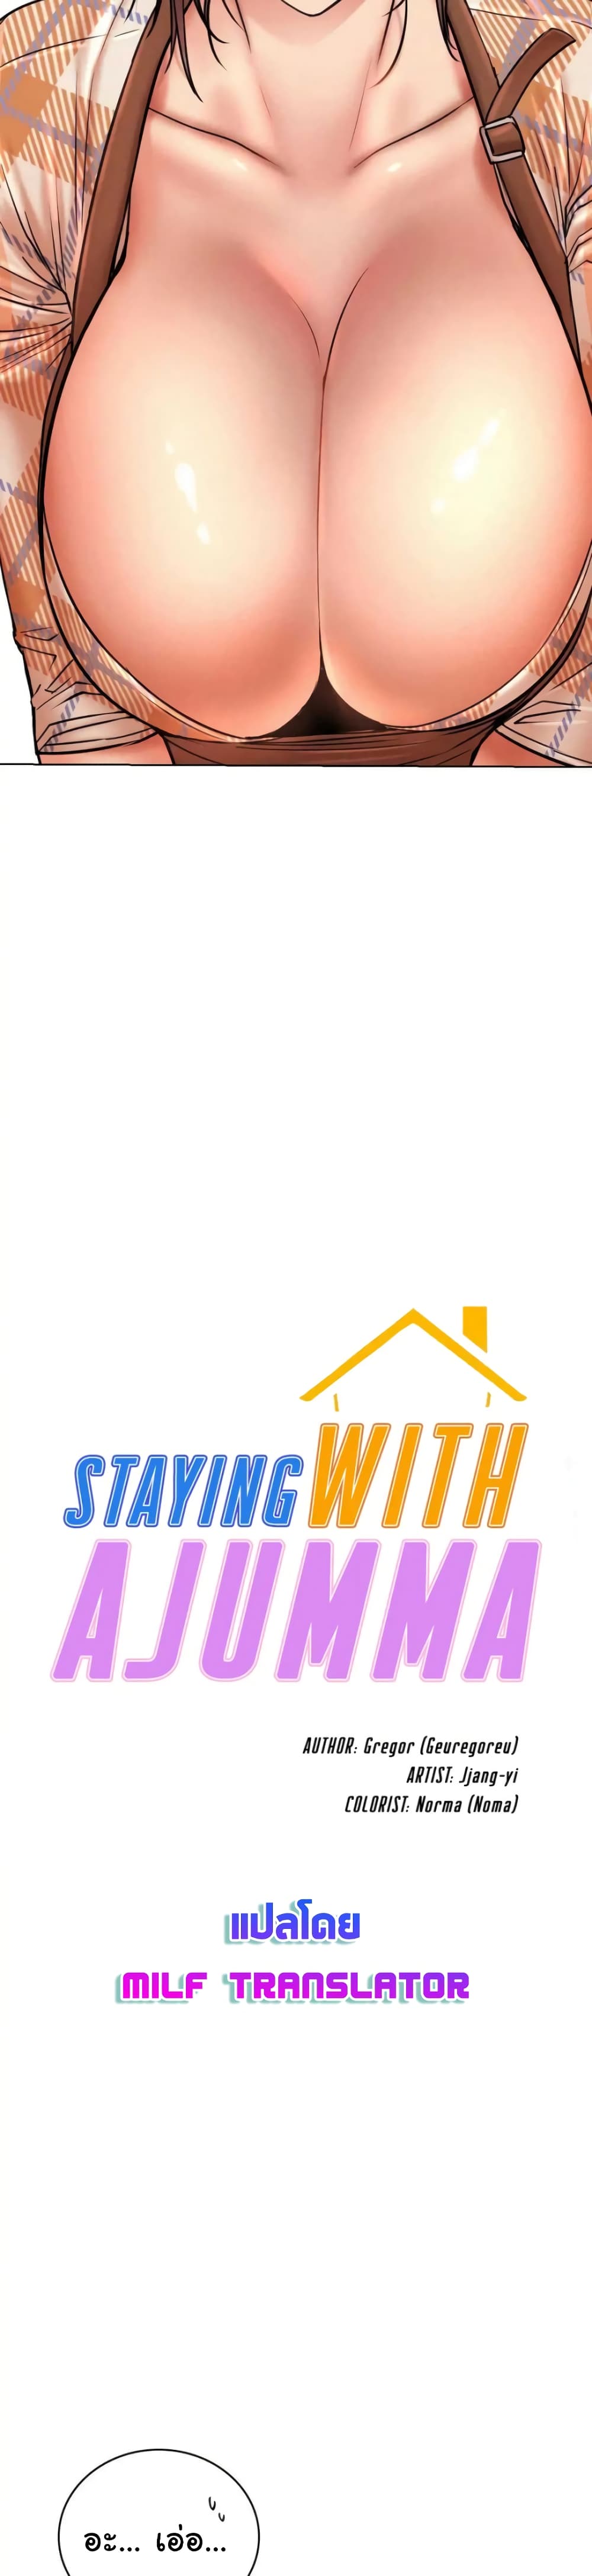 Staying with Ajumma 34-34